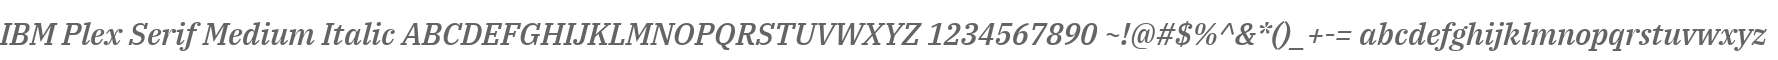 IBM Plex Serif Medium Italic